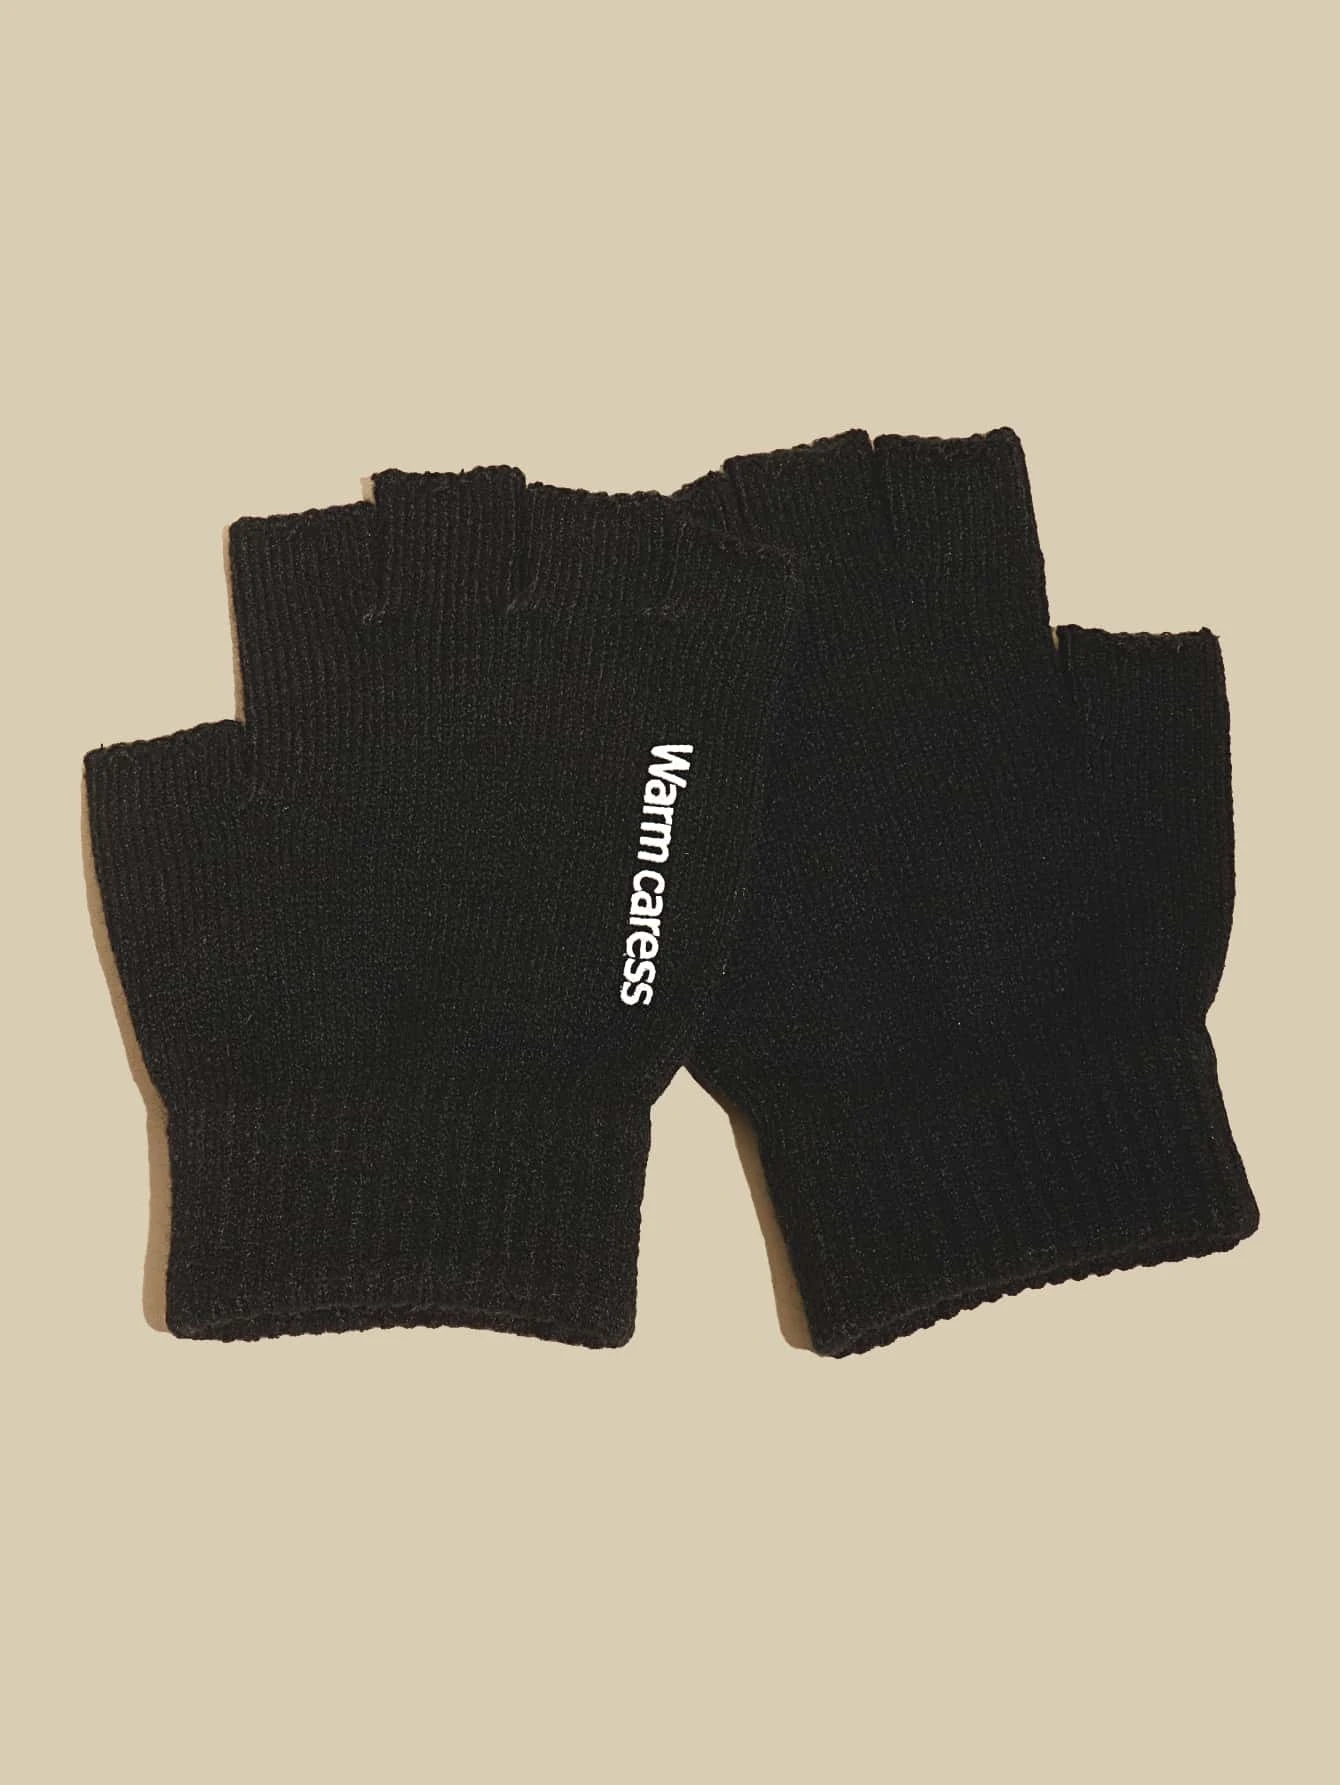 Ανδρικά υφασμάτινα αθλητικά γάντια μαύρα